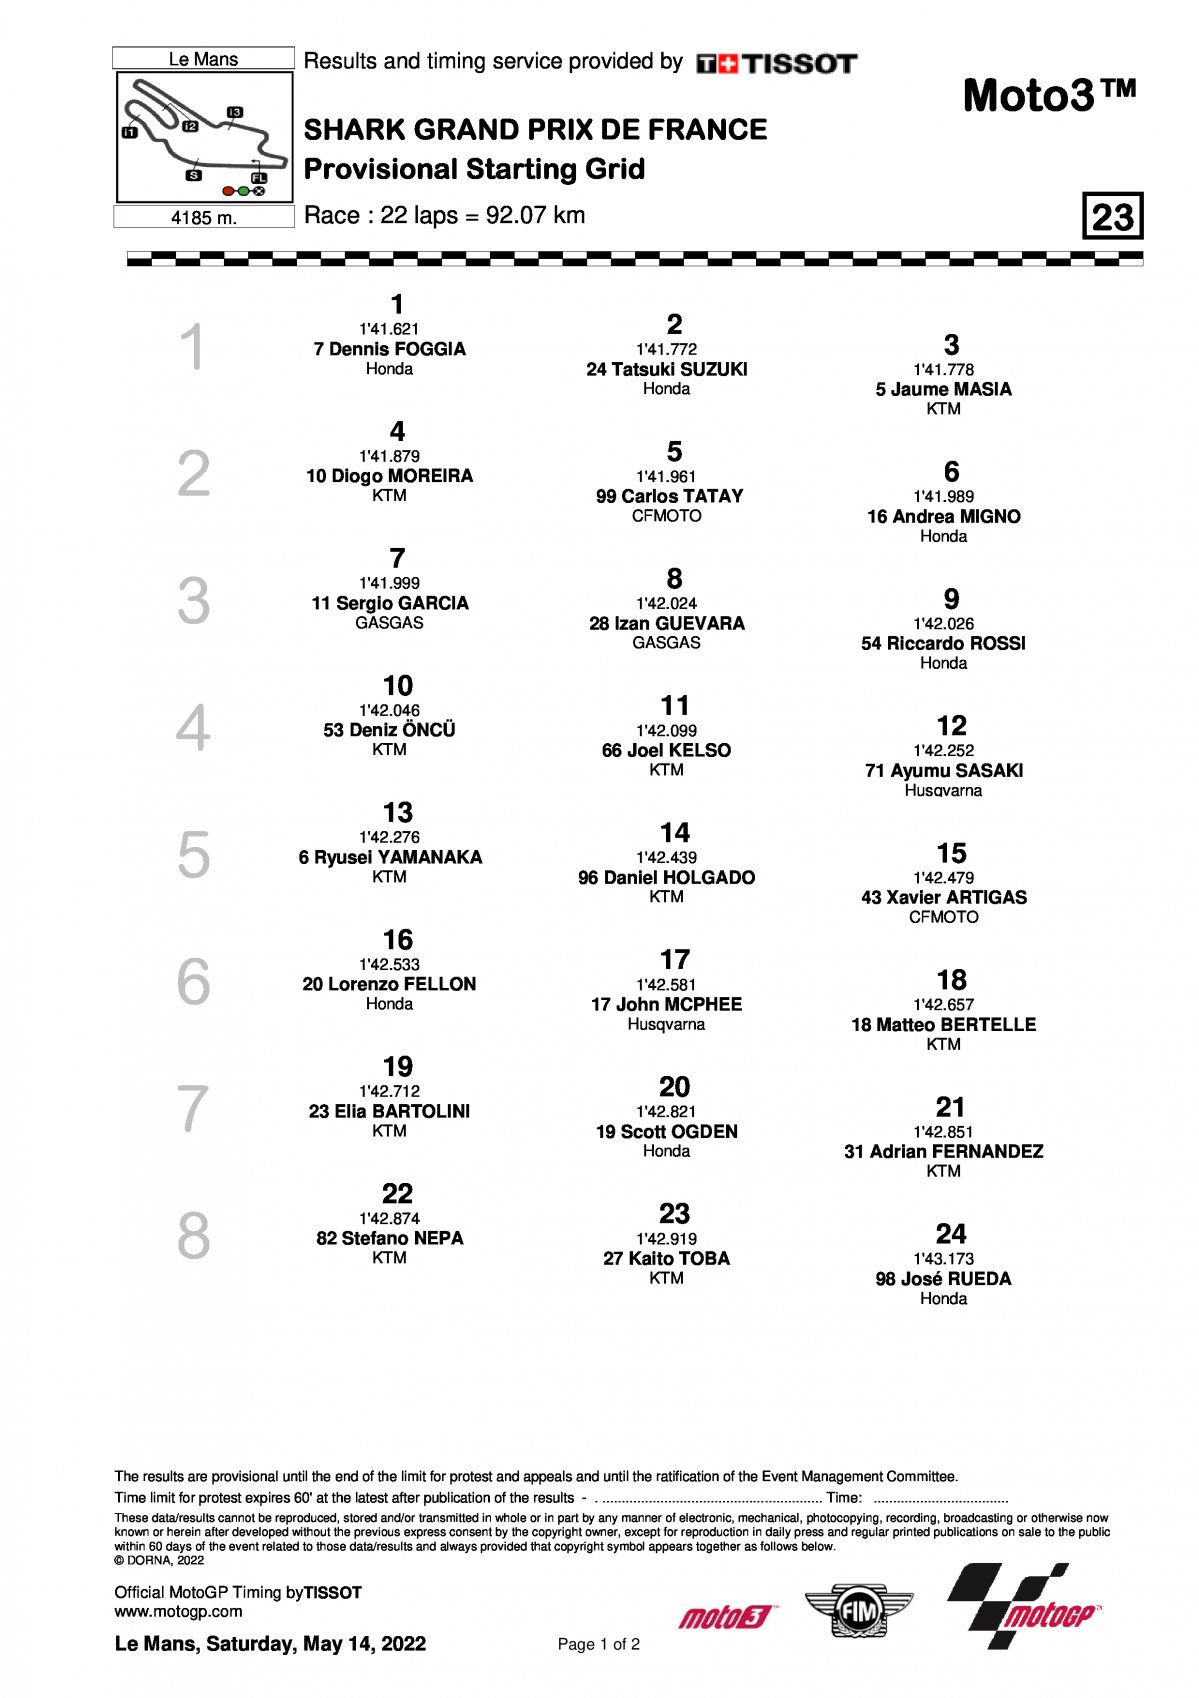 Стартовая решетка Гран-При Франции, Moto3 (15/05/2022)